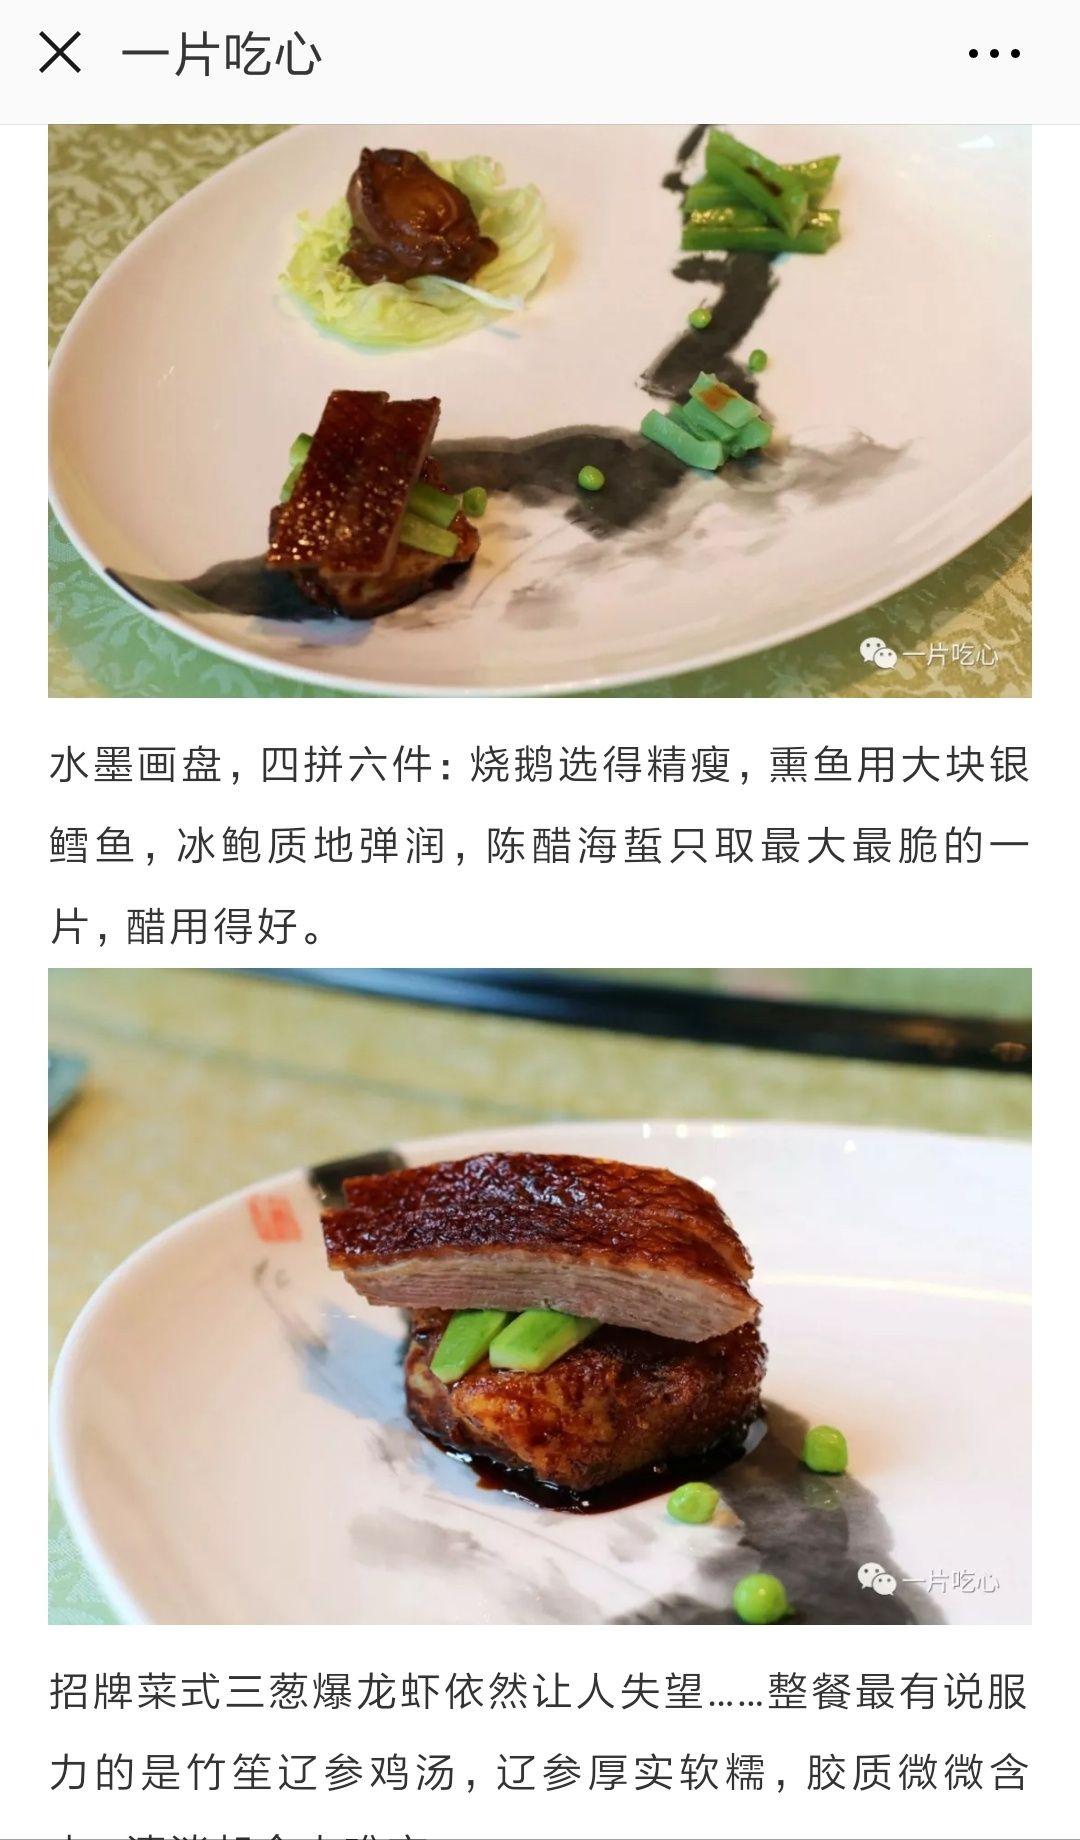 米其林真的无权评判中国菜吗?